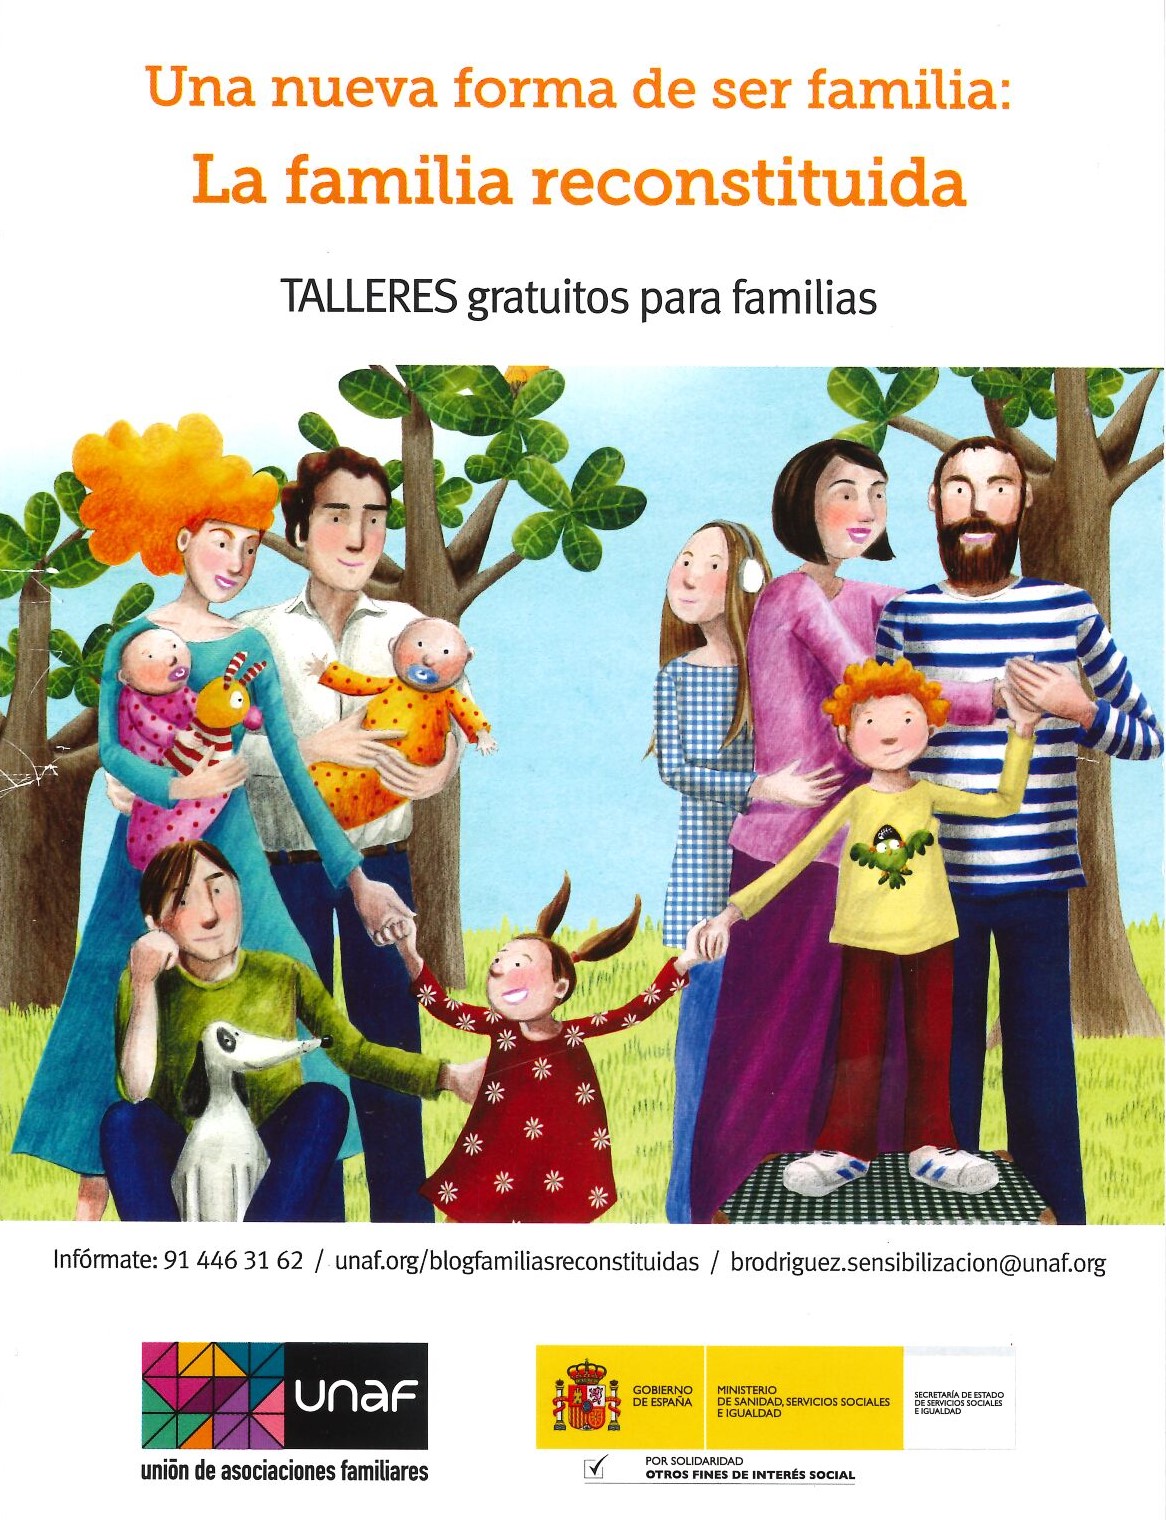 La Comarca de la Jacetania organiza Talleres formativos sobre temas de familia